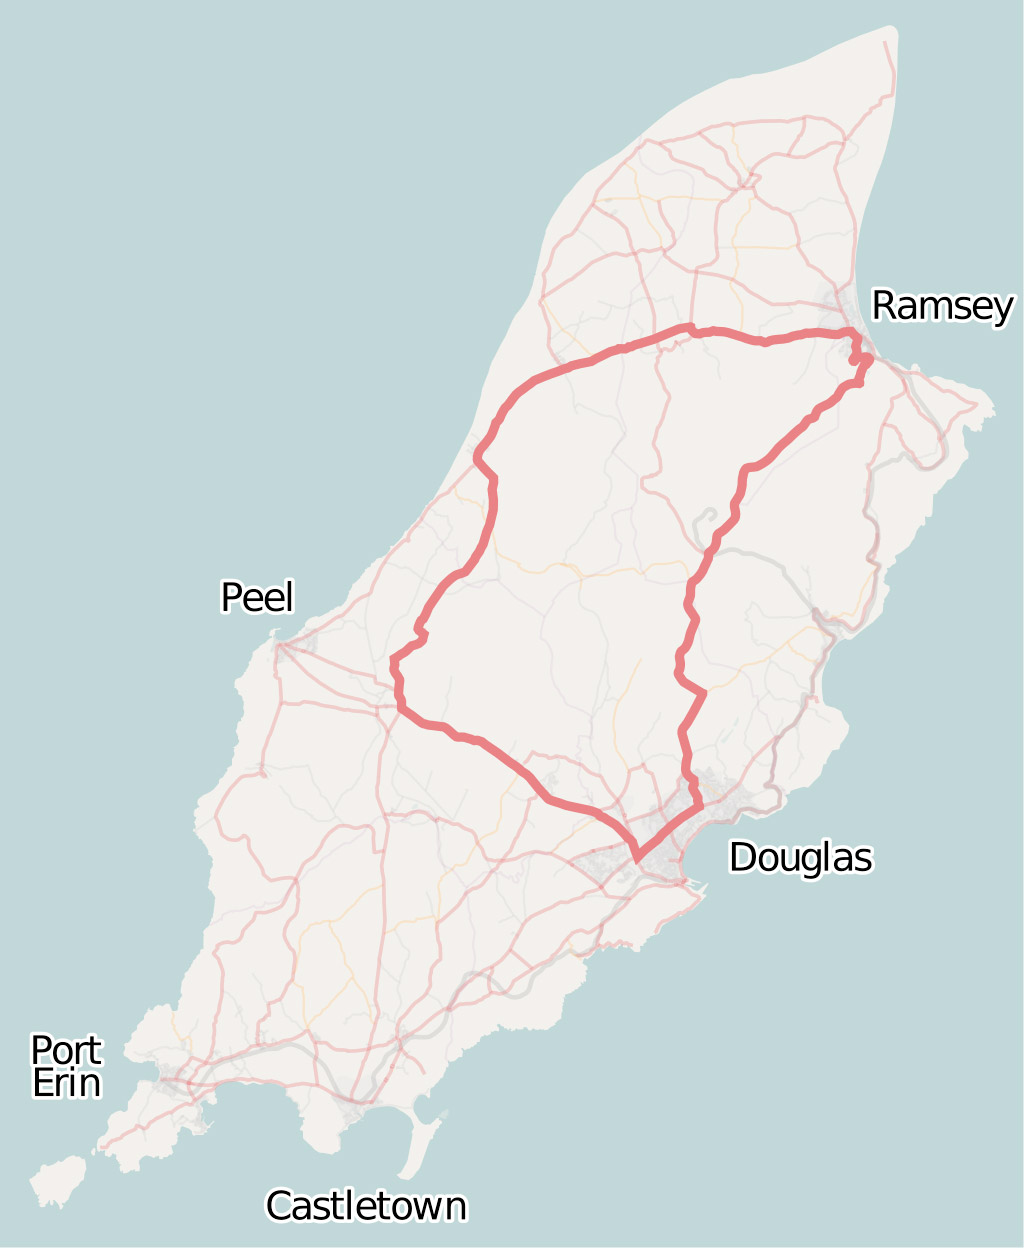 2015 Isle of Man TT (Tourist Trophy) - Corrida de moto mais